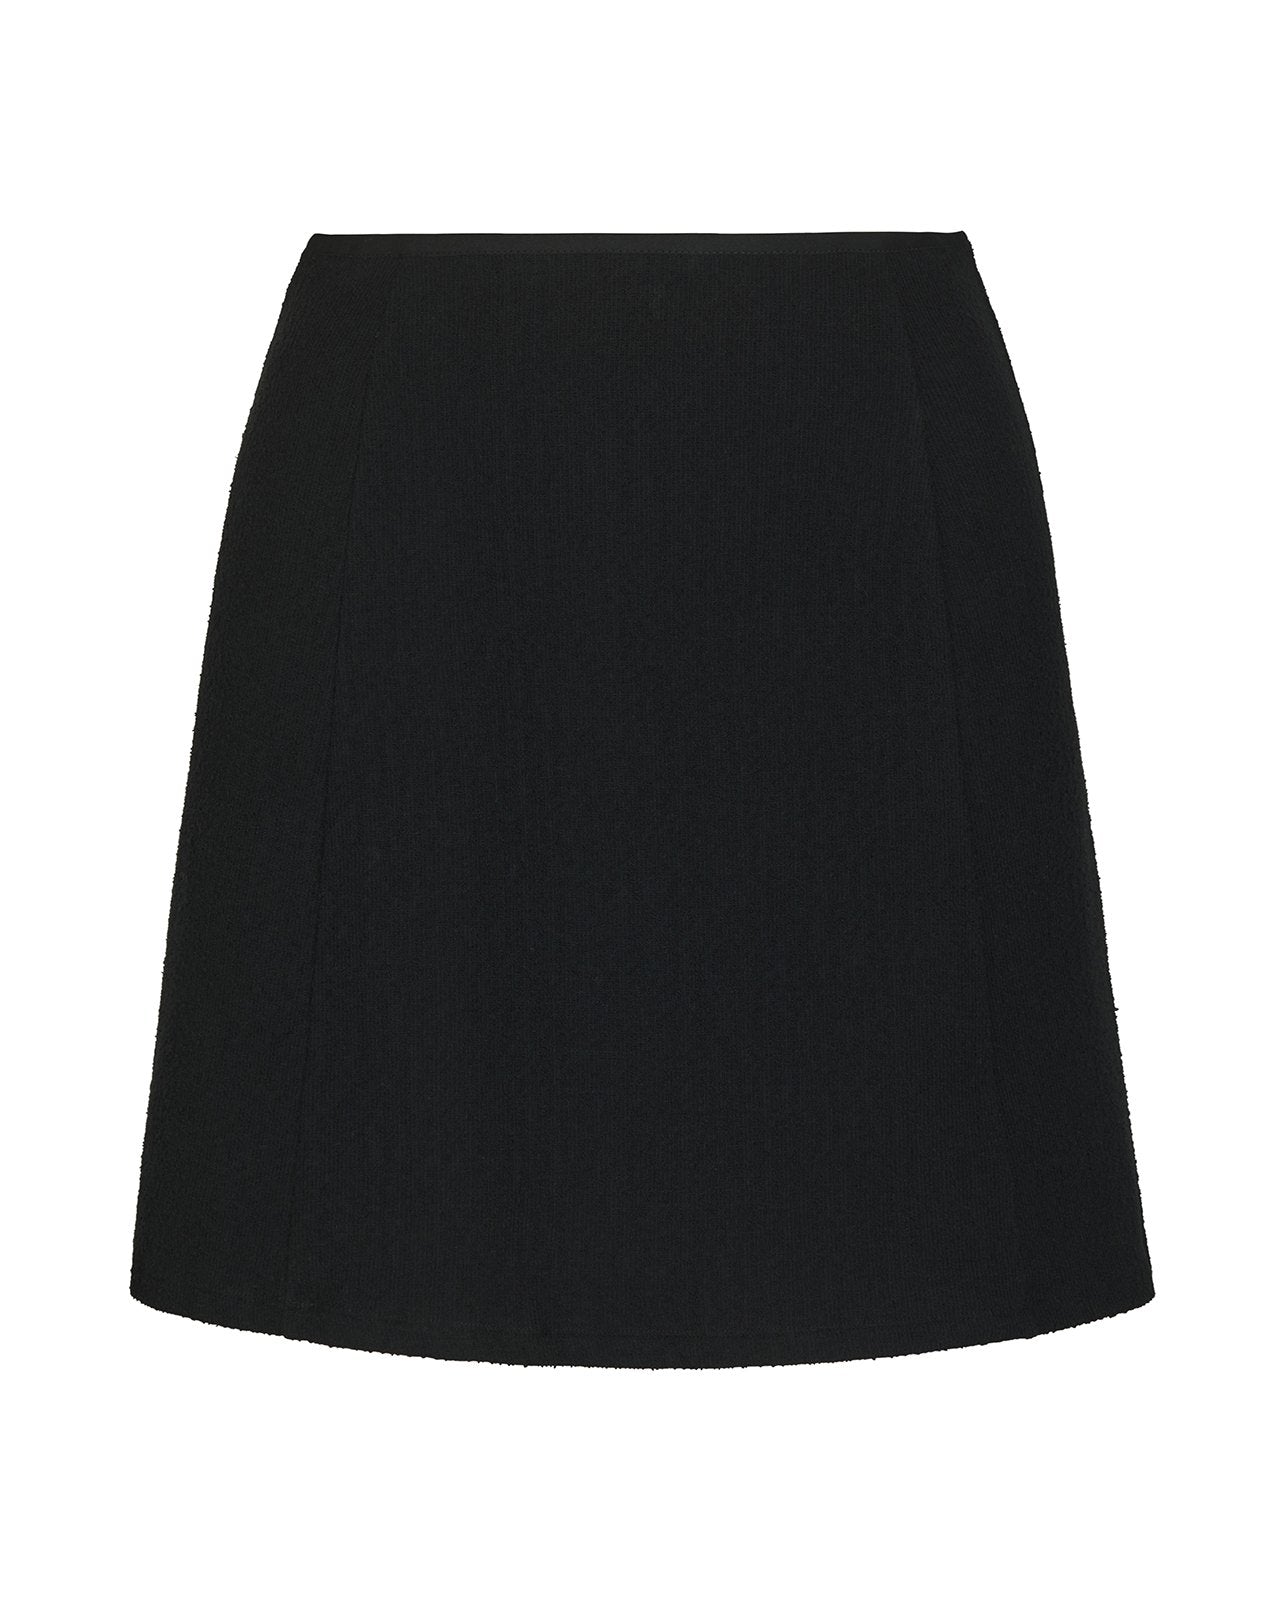 Flip Skirt – Black – I Dream For You